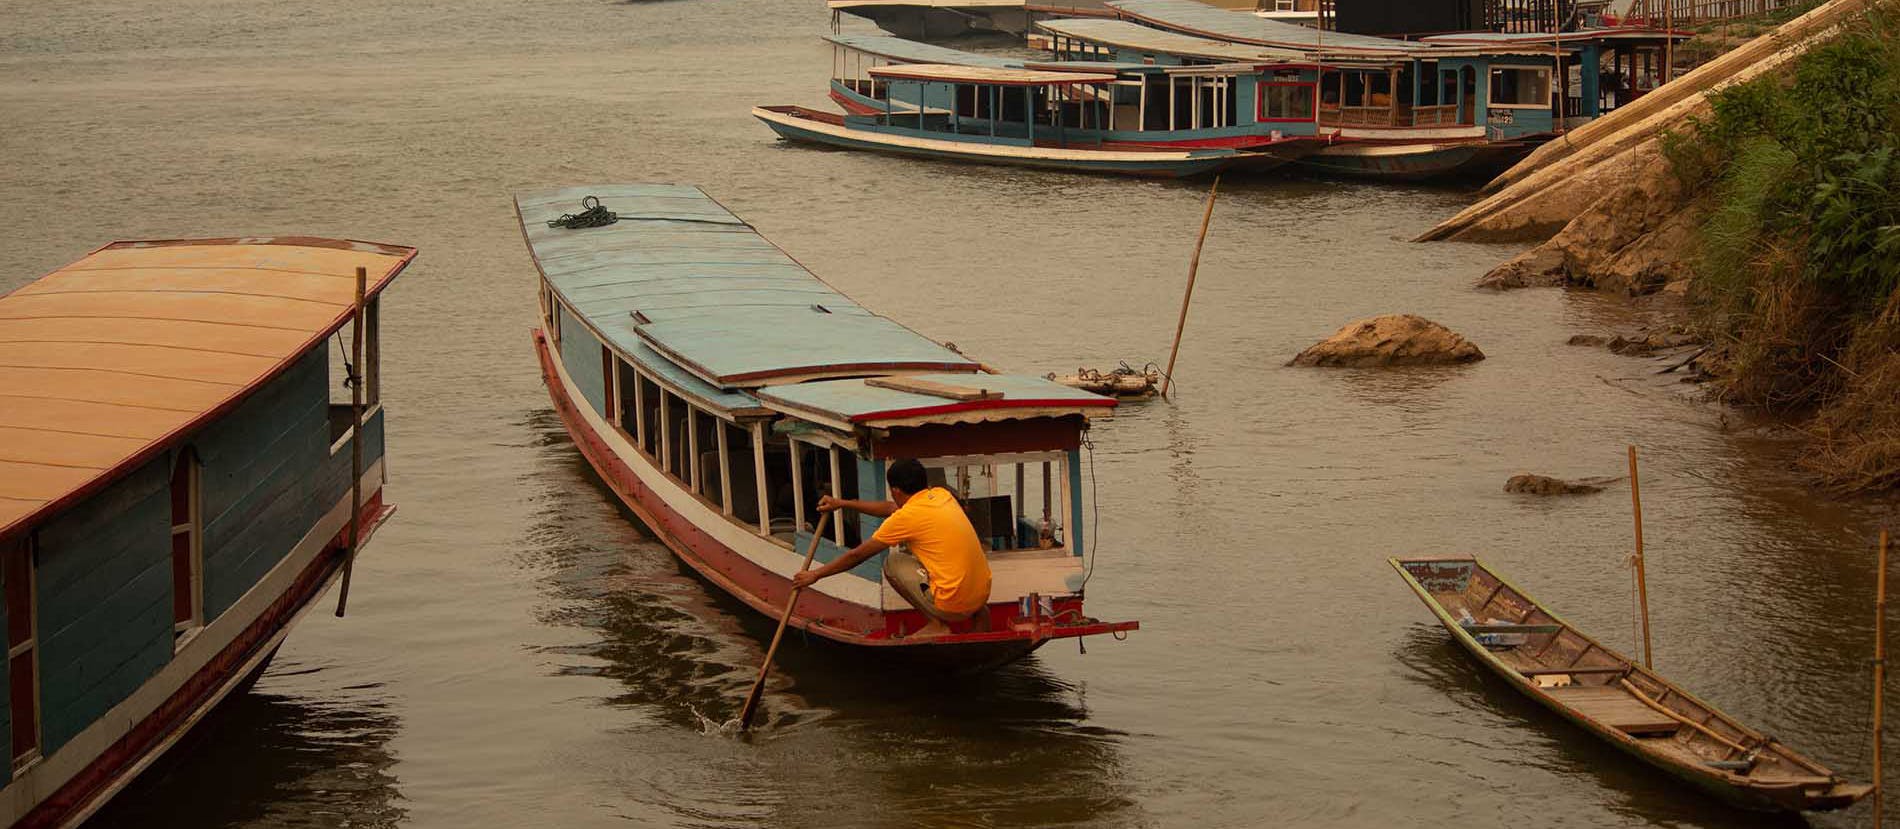 Un uomo nel retro della sua barca a lunga coda, con un remo in mano, che sta spingendo la propria barca sul fiume Mekong. Foto scattata nei pressi di Luang Prabang, nel Laos